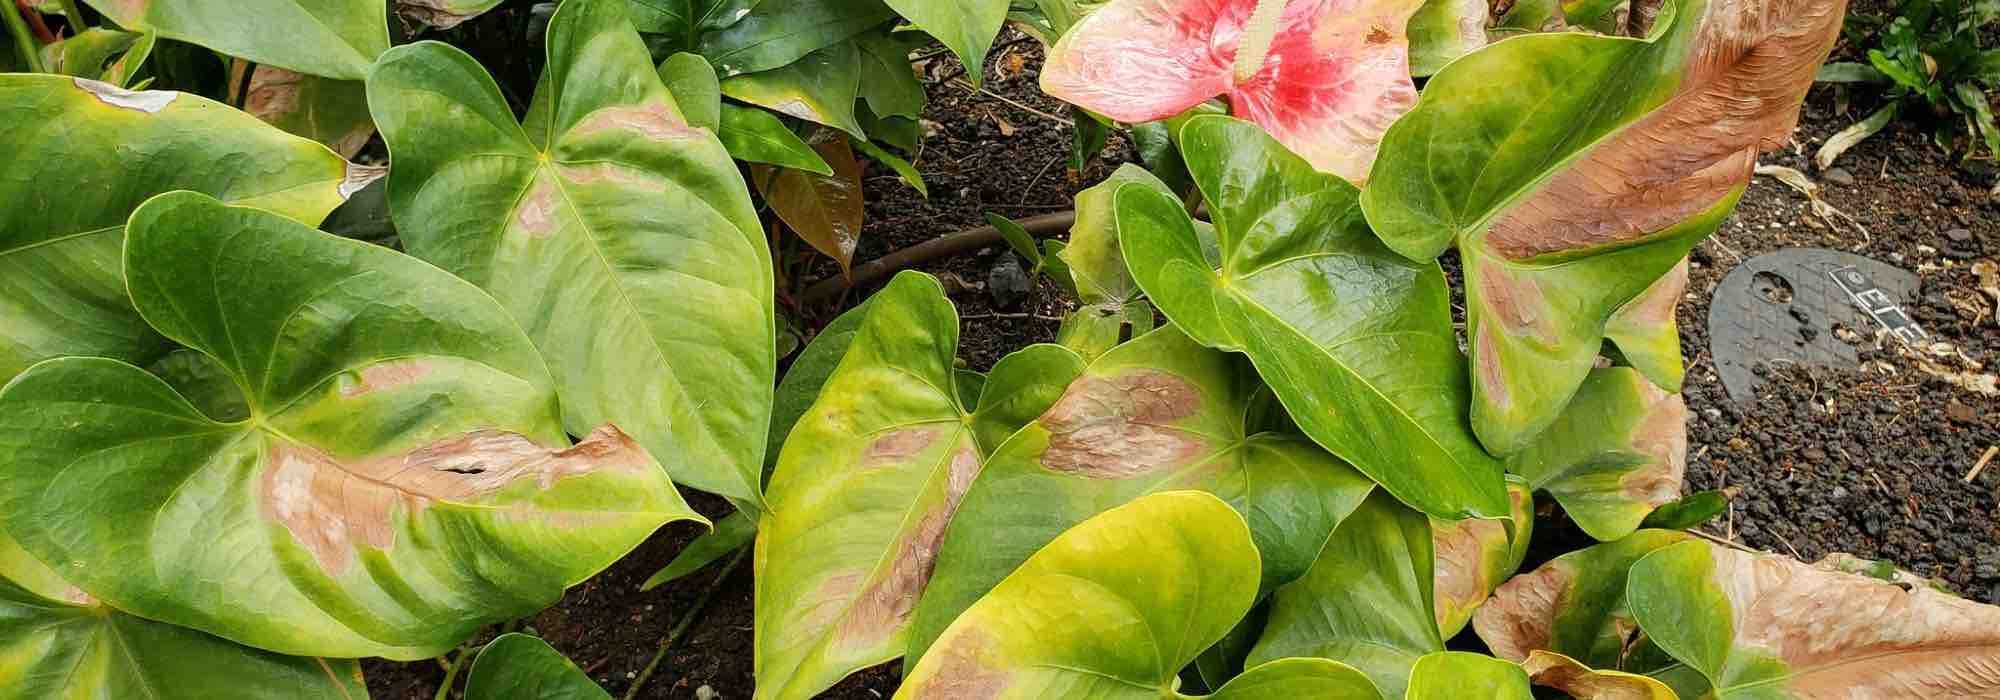 Forte chaleur : 10 astuces pour protéger vos plantes efficacement